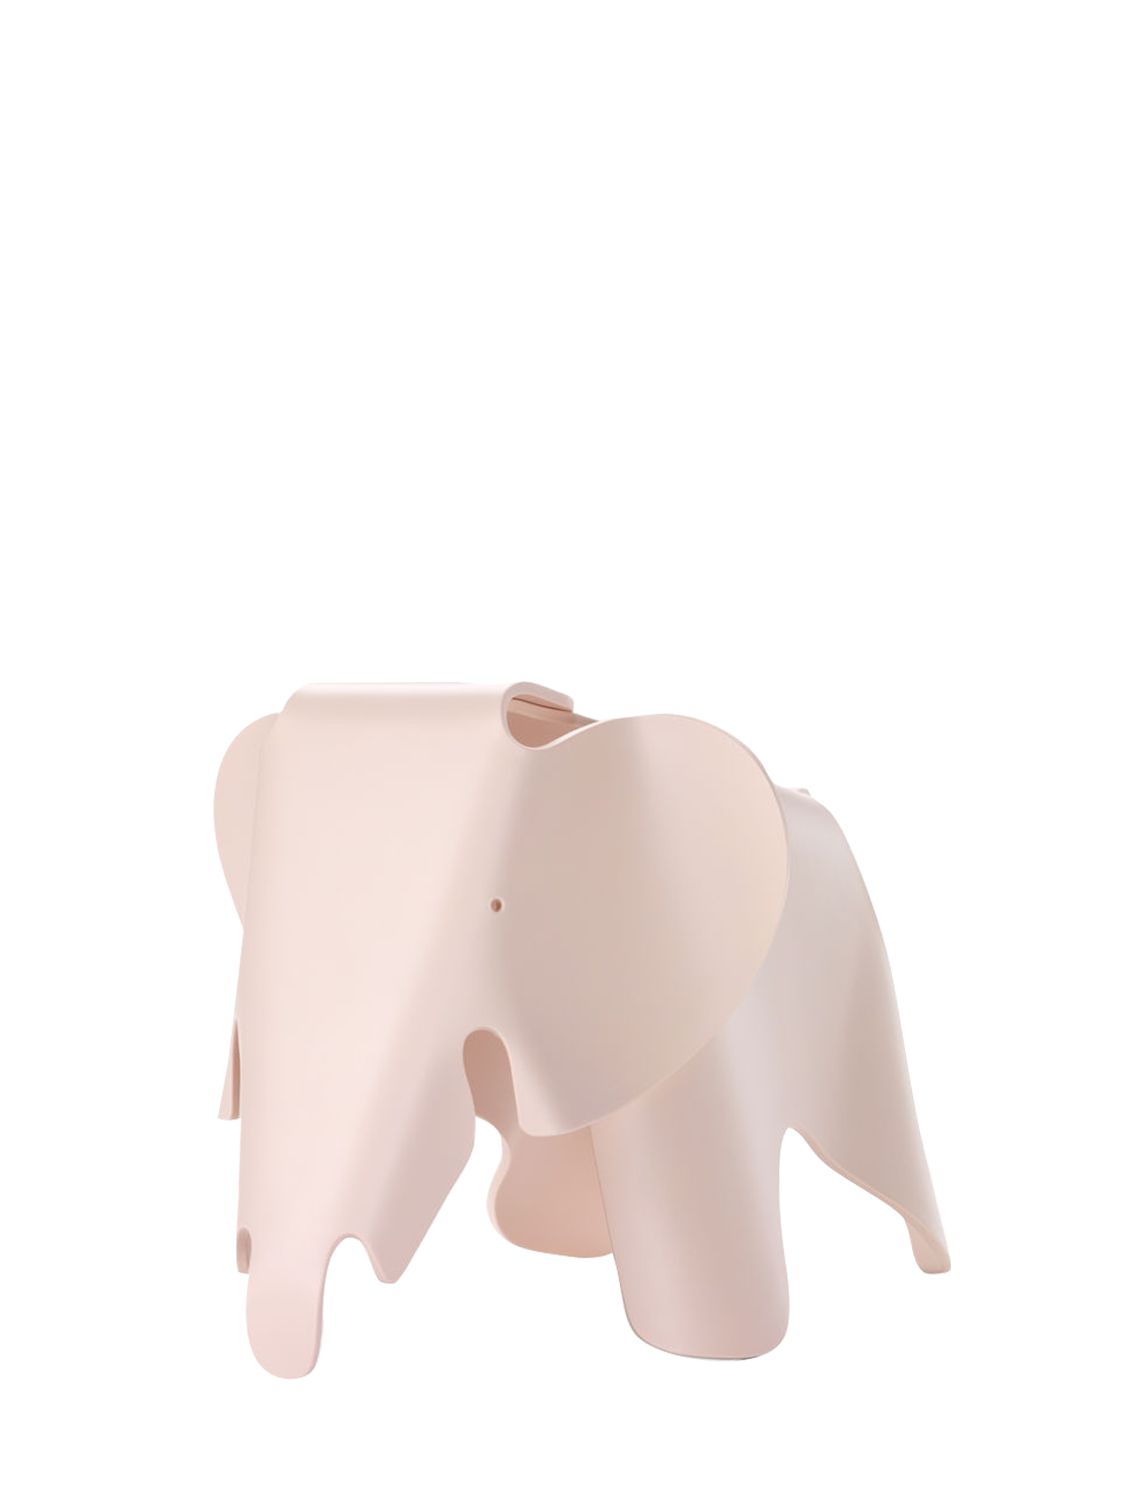 Elefante Piccolo Eames - VITRA - Modalova